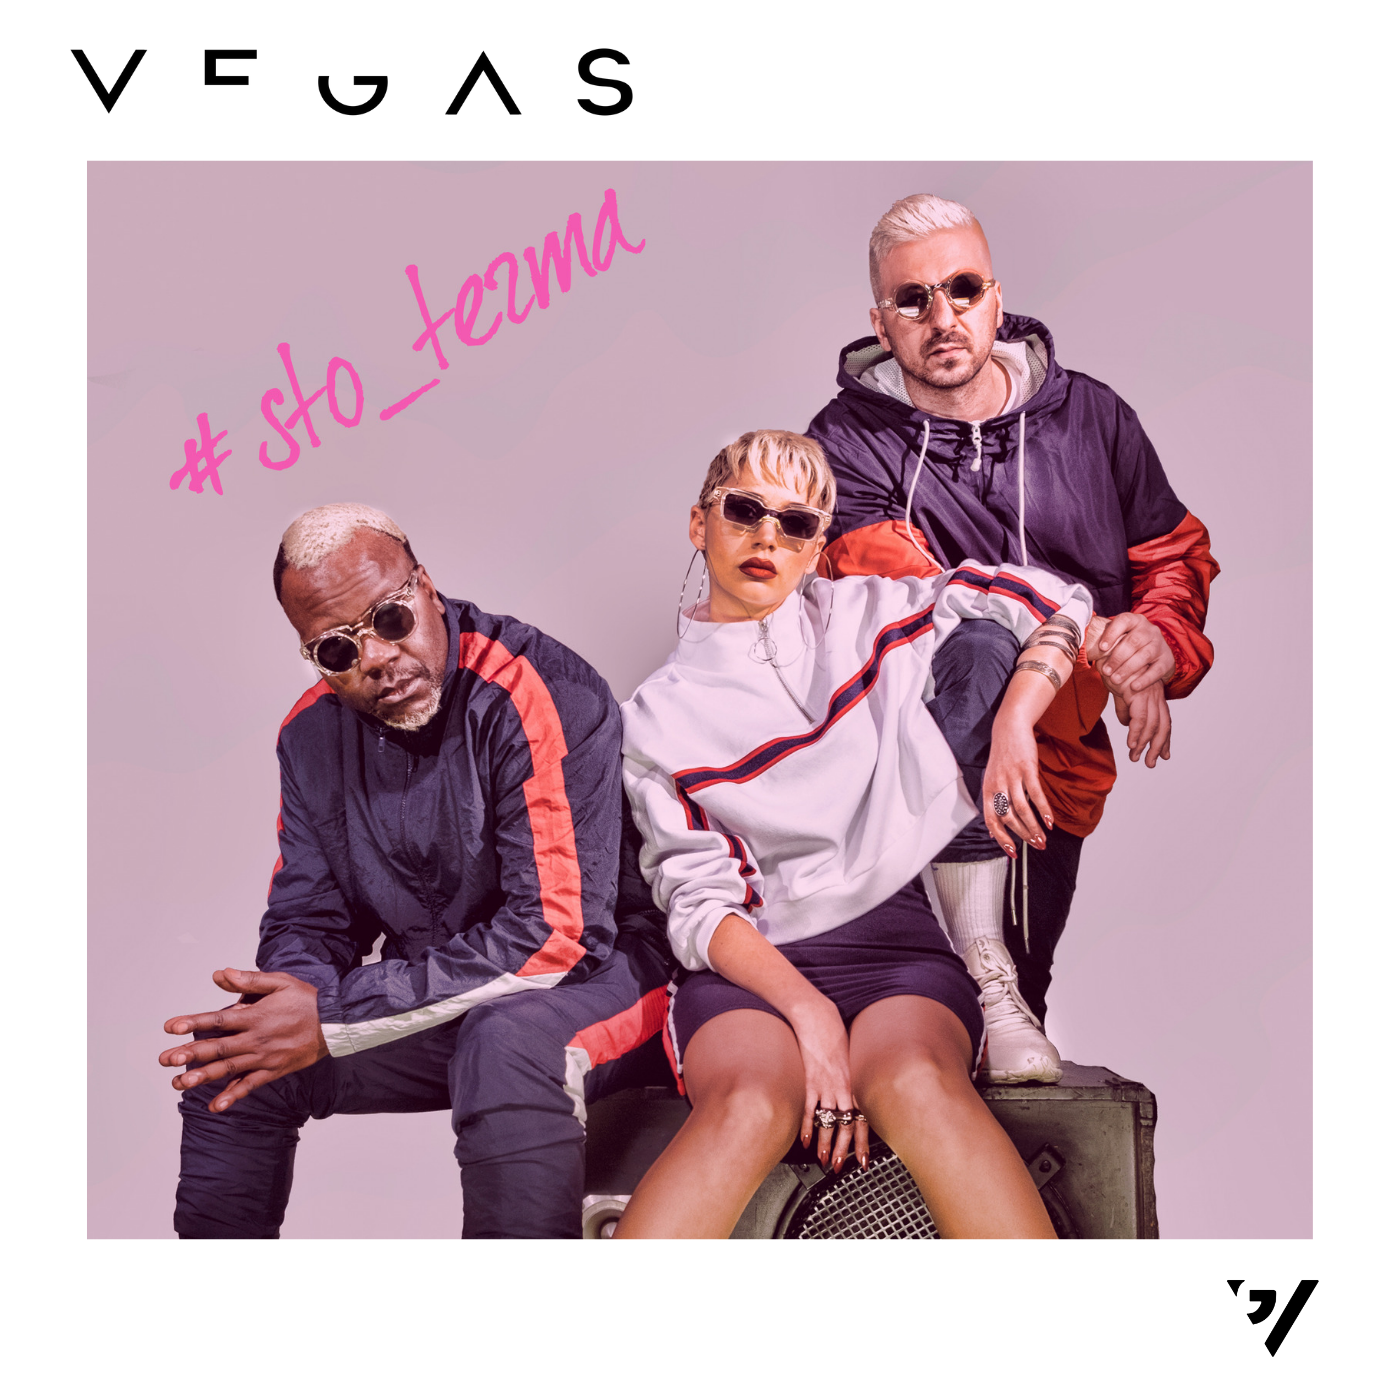 Στο τέρμα: Το νέο τραγούδι των Vegas με εκρηκτικό video clip